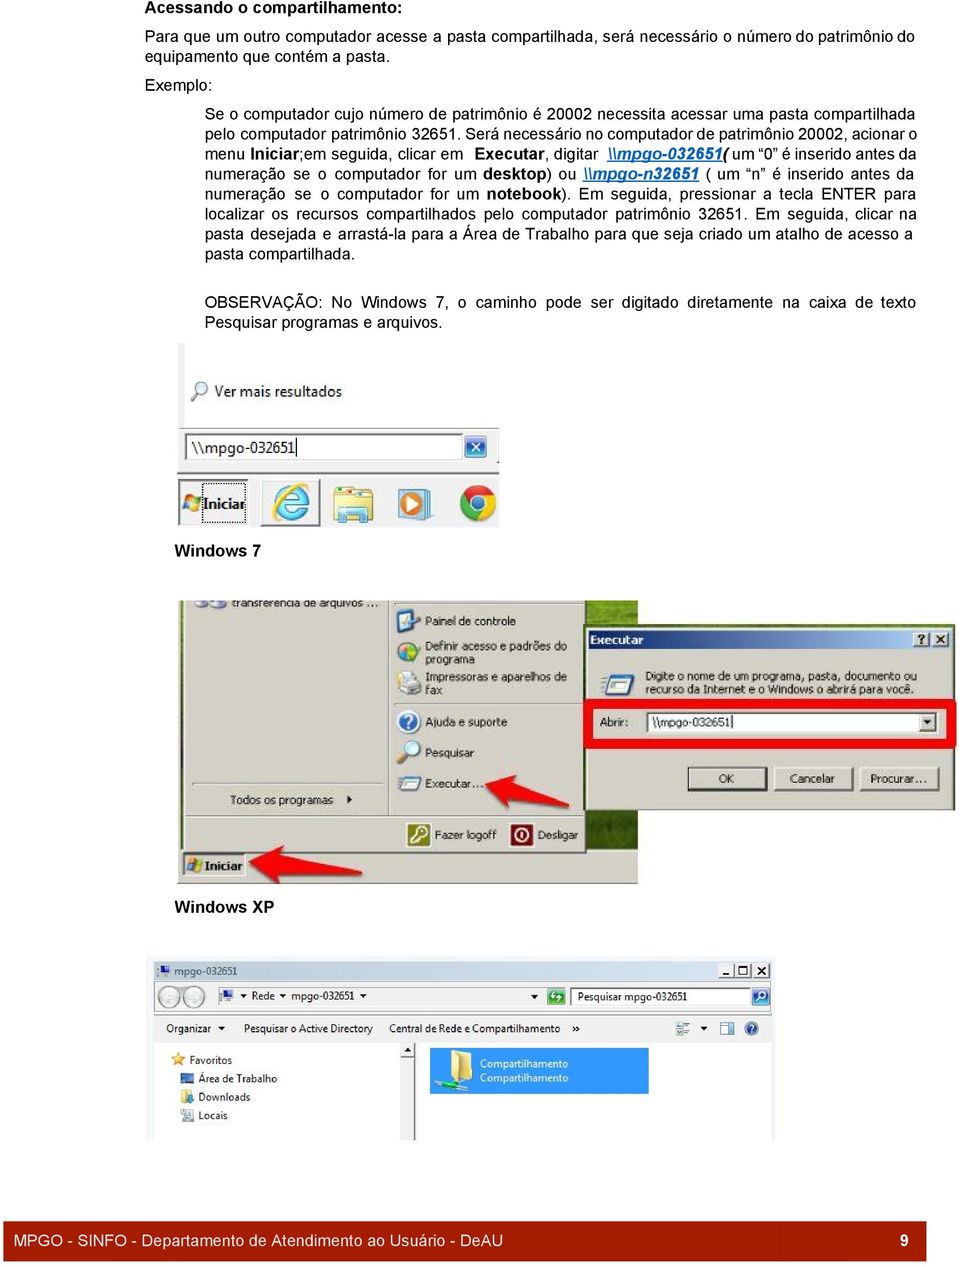 Será necessário no computador de patrimônio 20002, acionar o menu Iniciar ;em seguida, clicar em Executar, digitar \\mpgo 0 32651 ( um 0 é inserido antes da numeração se o computador for um desktop )